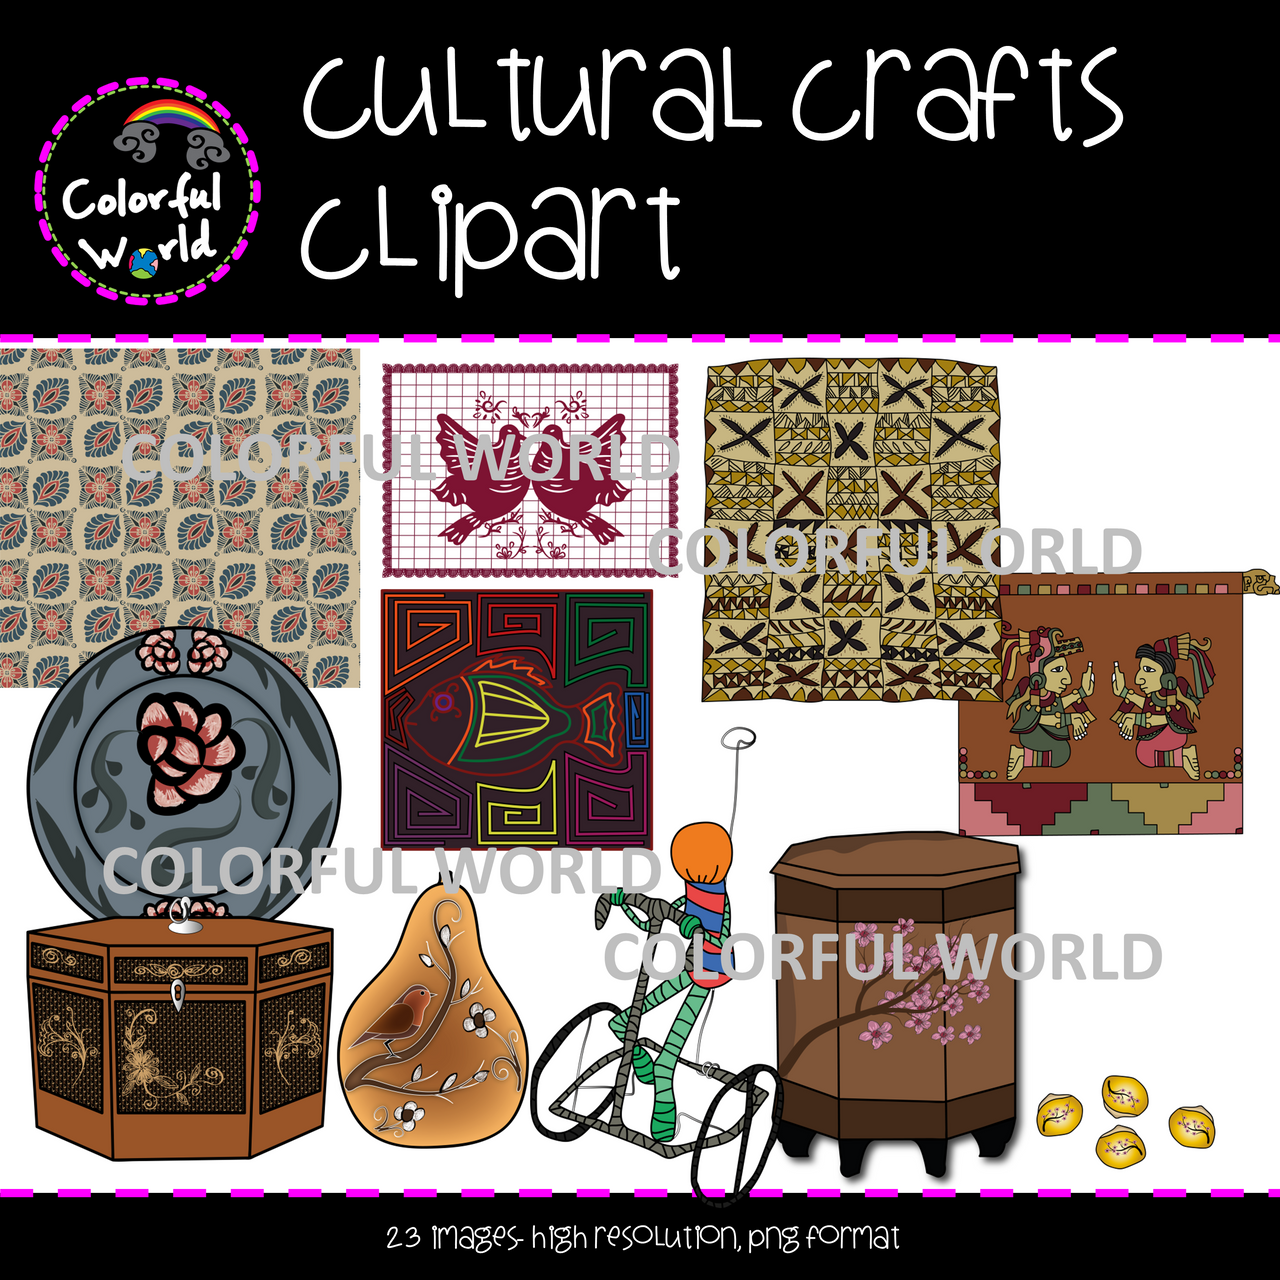 Cultural crafts clipart